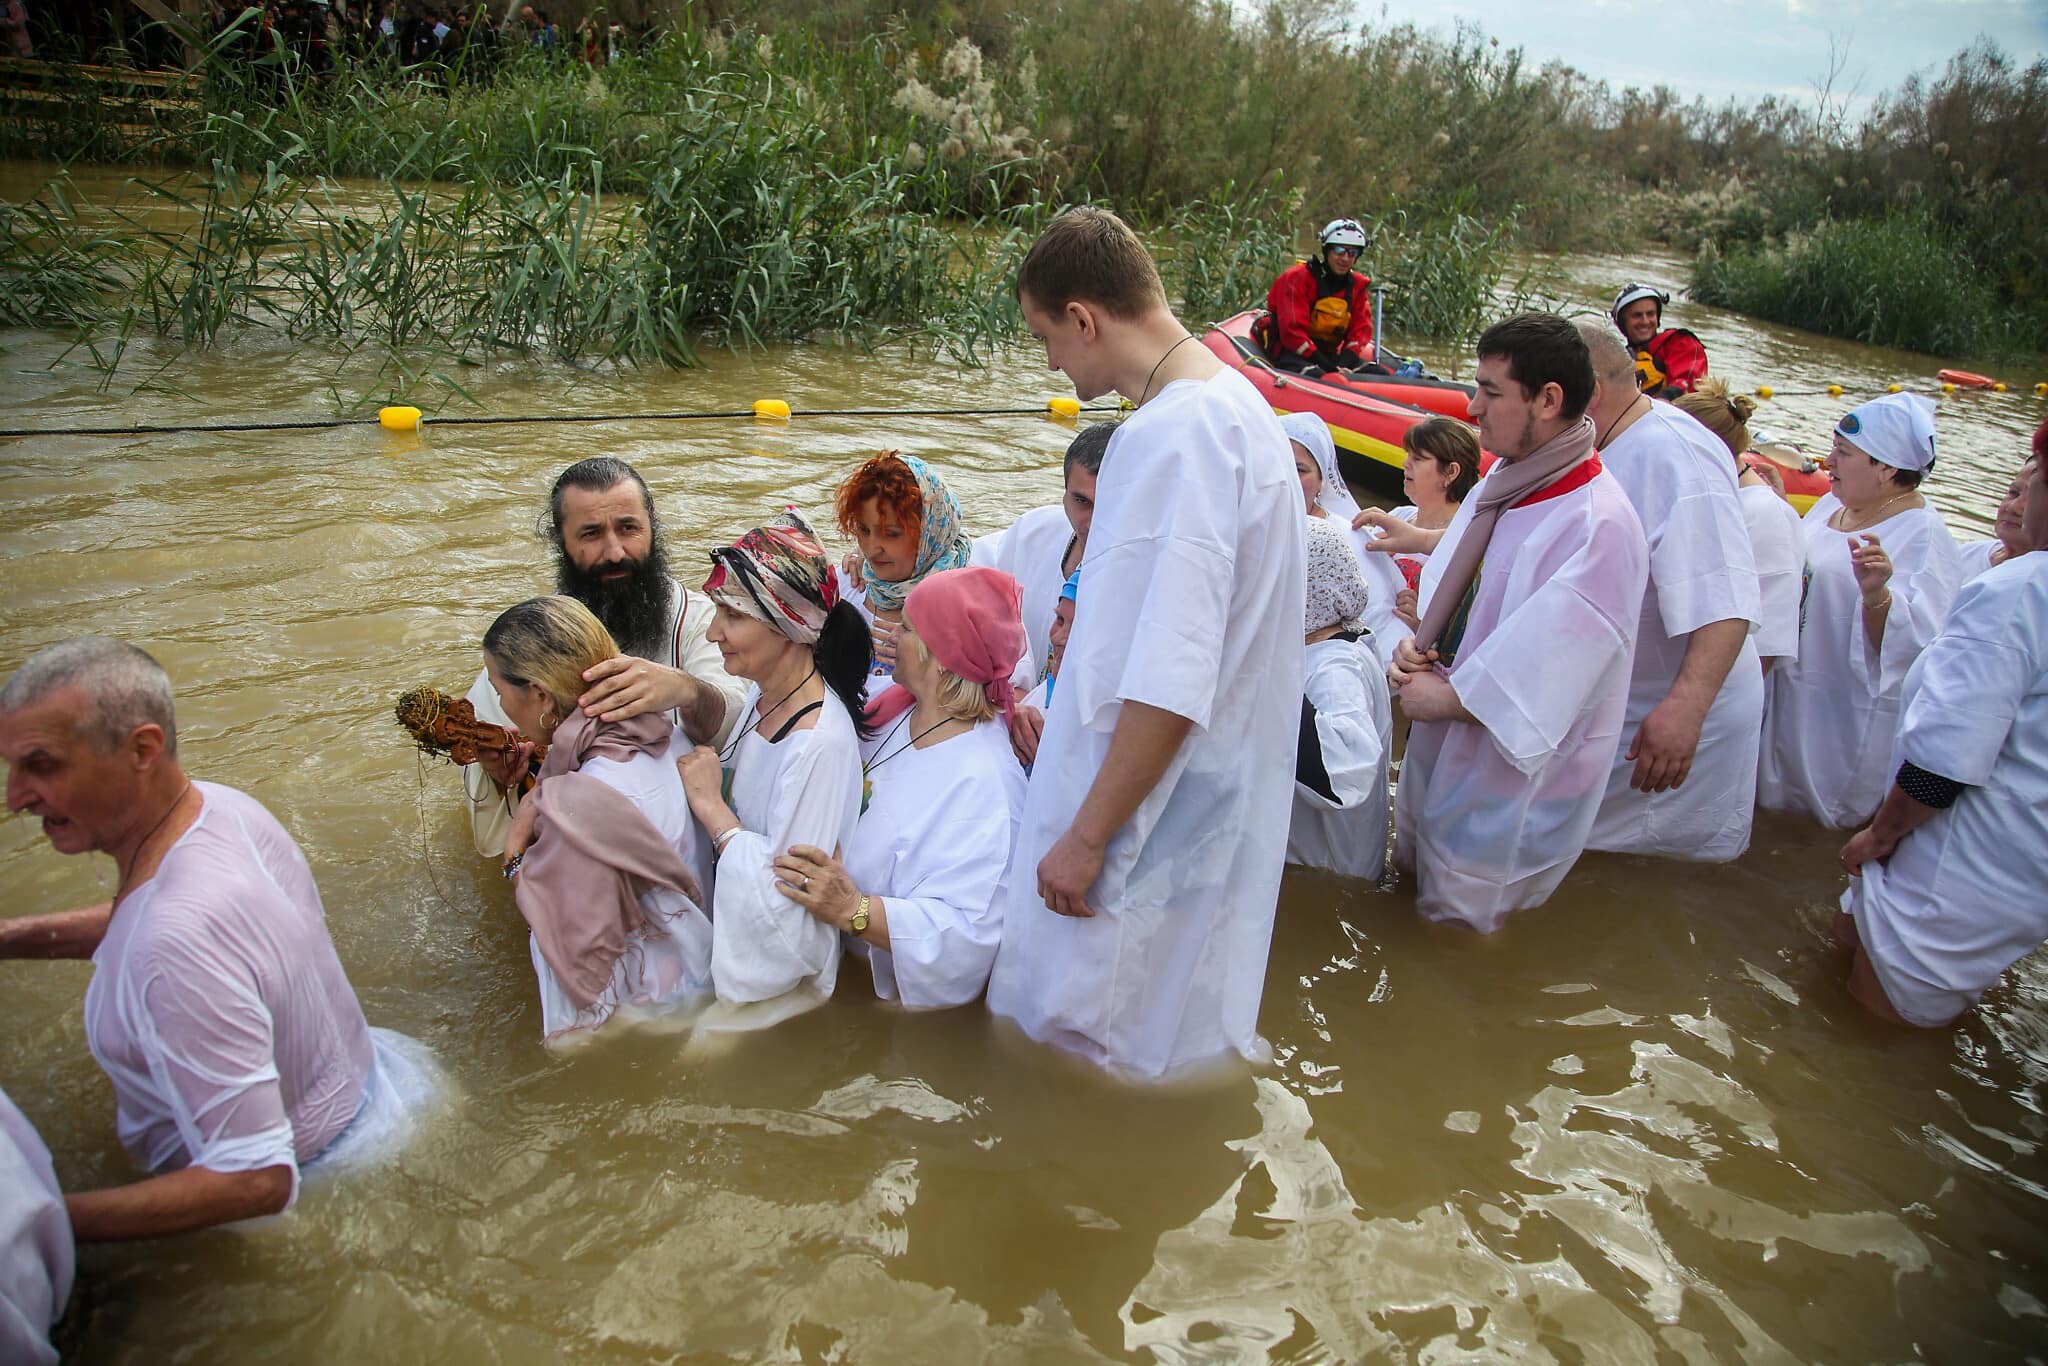 עולי רגל נוצרים טבולים בירדן באתר קסר אל יהוד. ינואר 2019 (צילום: Flash90)